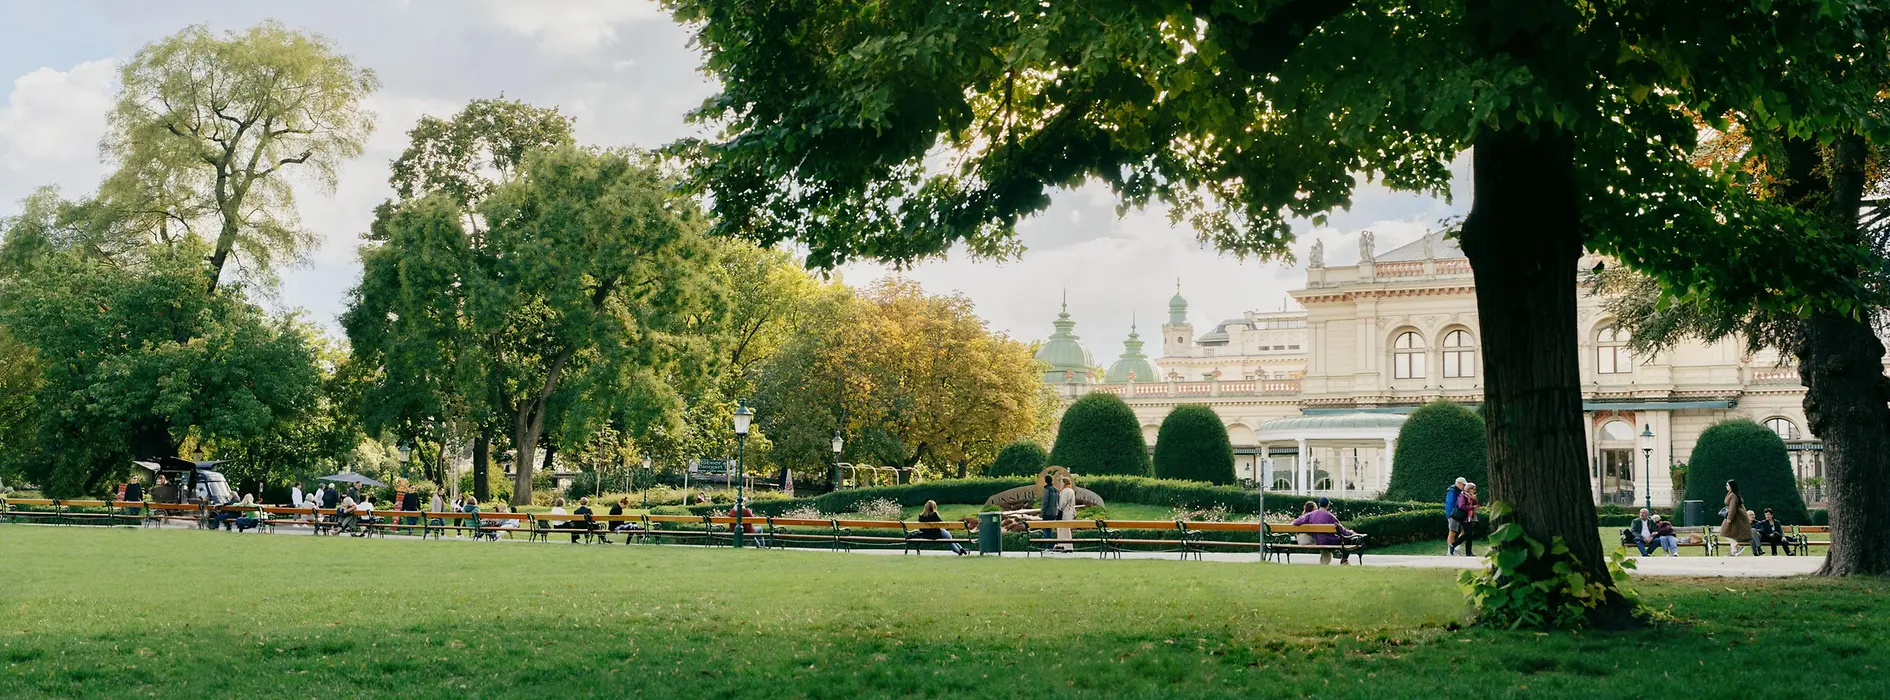 Stadtpark en Viena